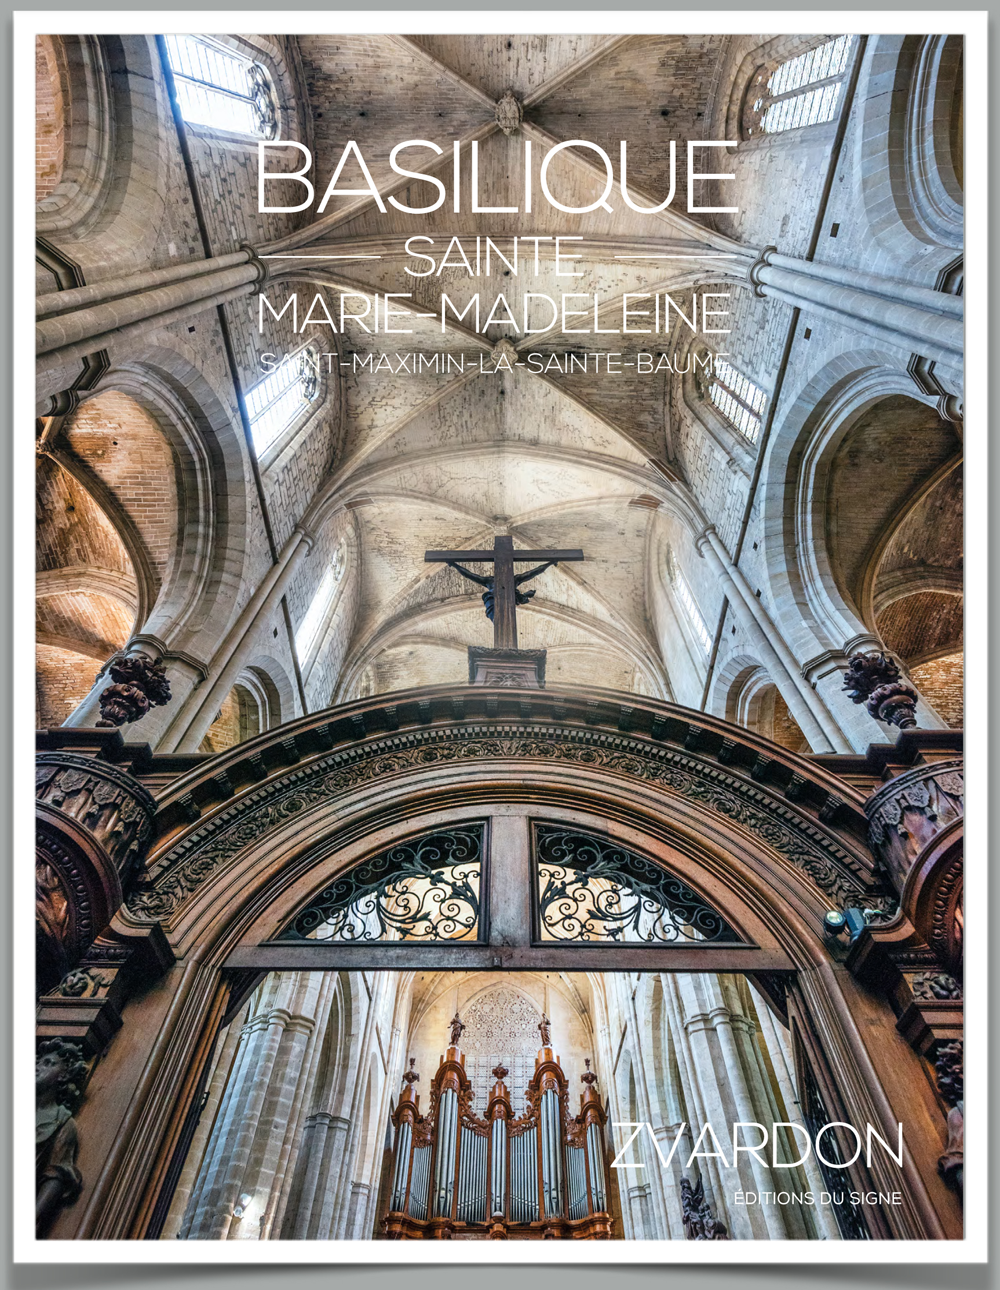 Basilique Sainte Marie-Madeleine